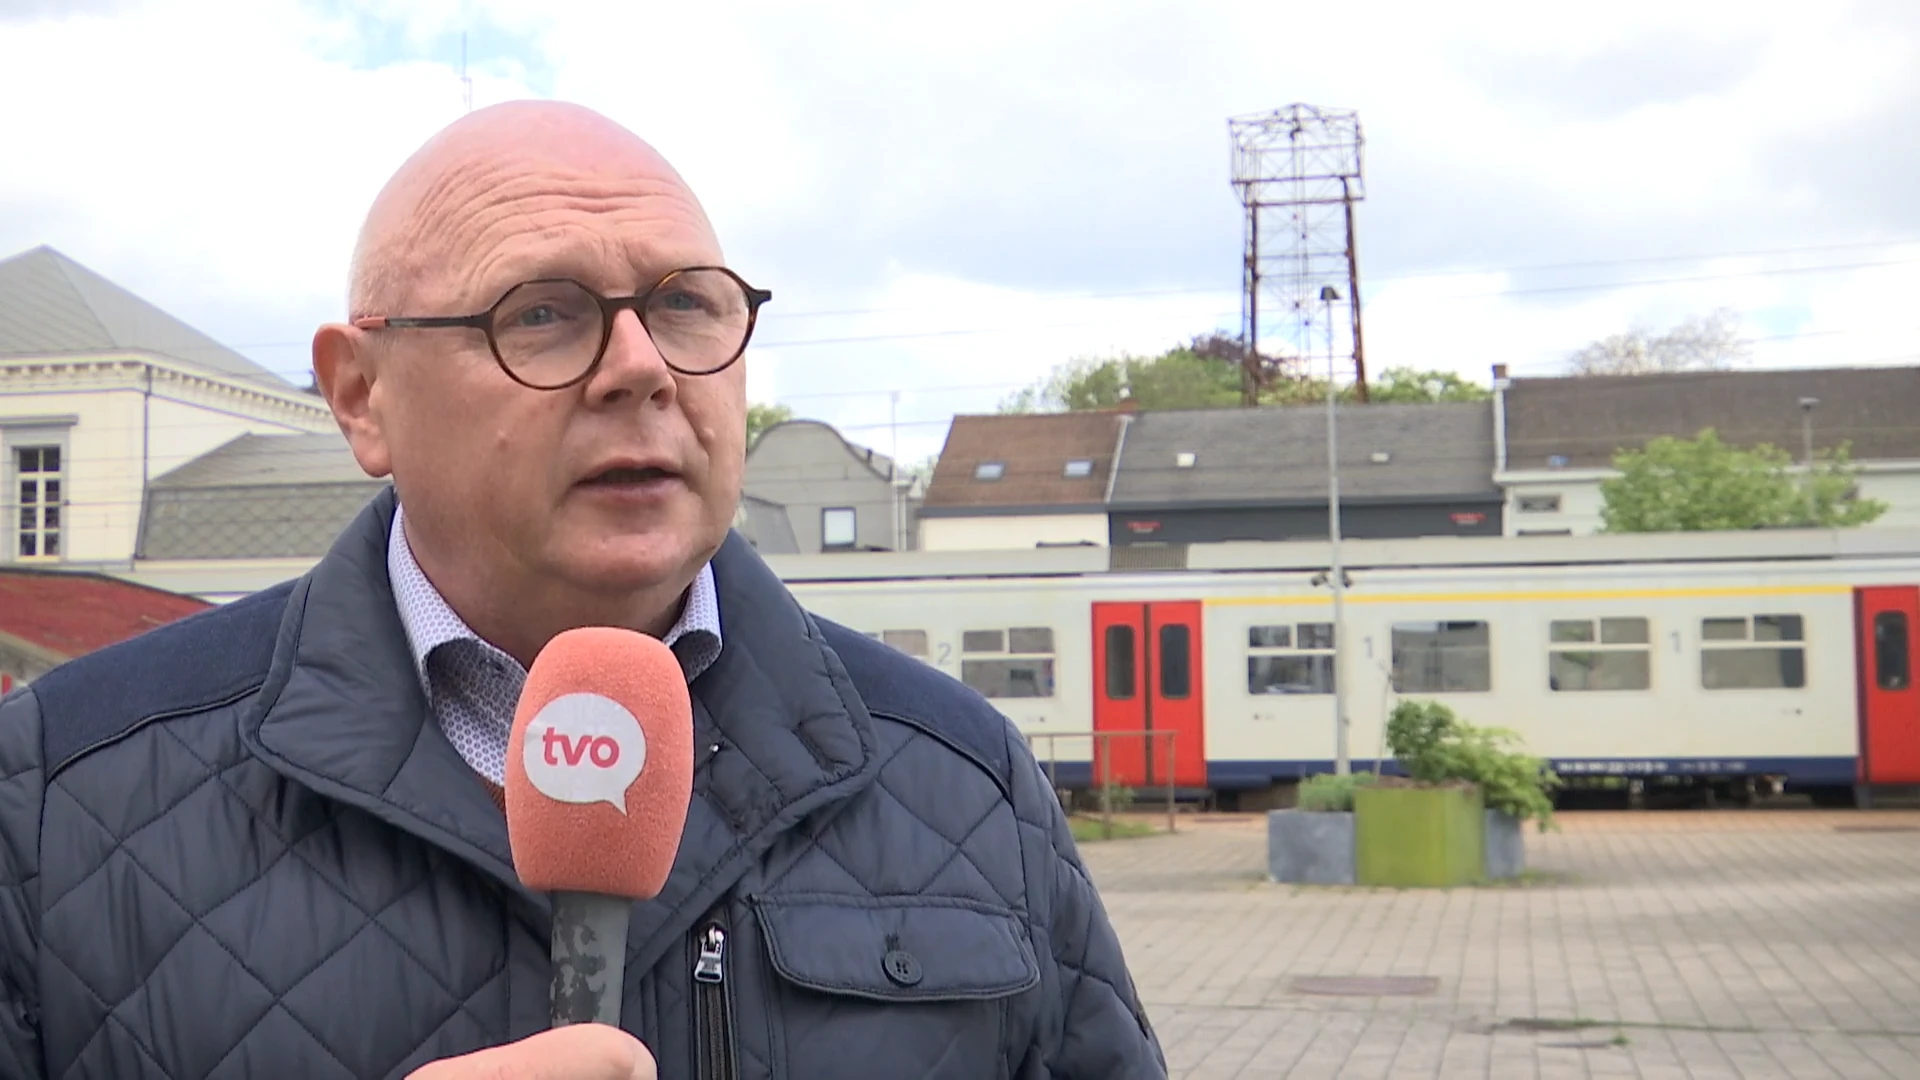 Burgemeester Wetteren: "Brand heeft ons al 135.000 euro gekost, factuur moet terugbetaald worden"